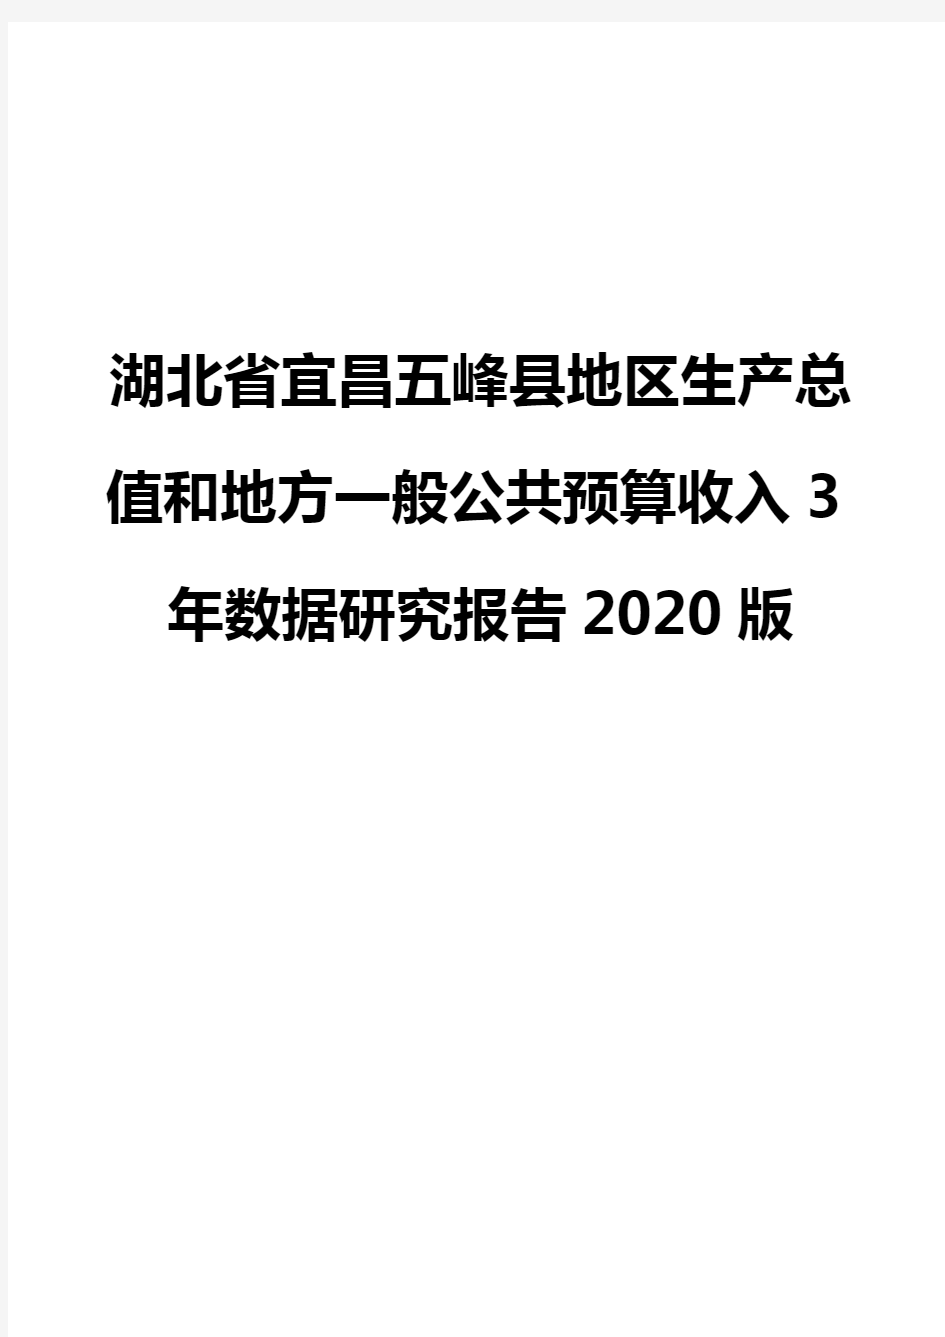 湖北省宜昌五峰县地区生产总值和地方一般公共预算收入3年数据研究报告2020版